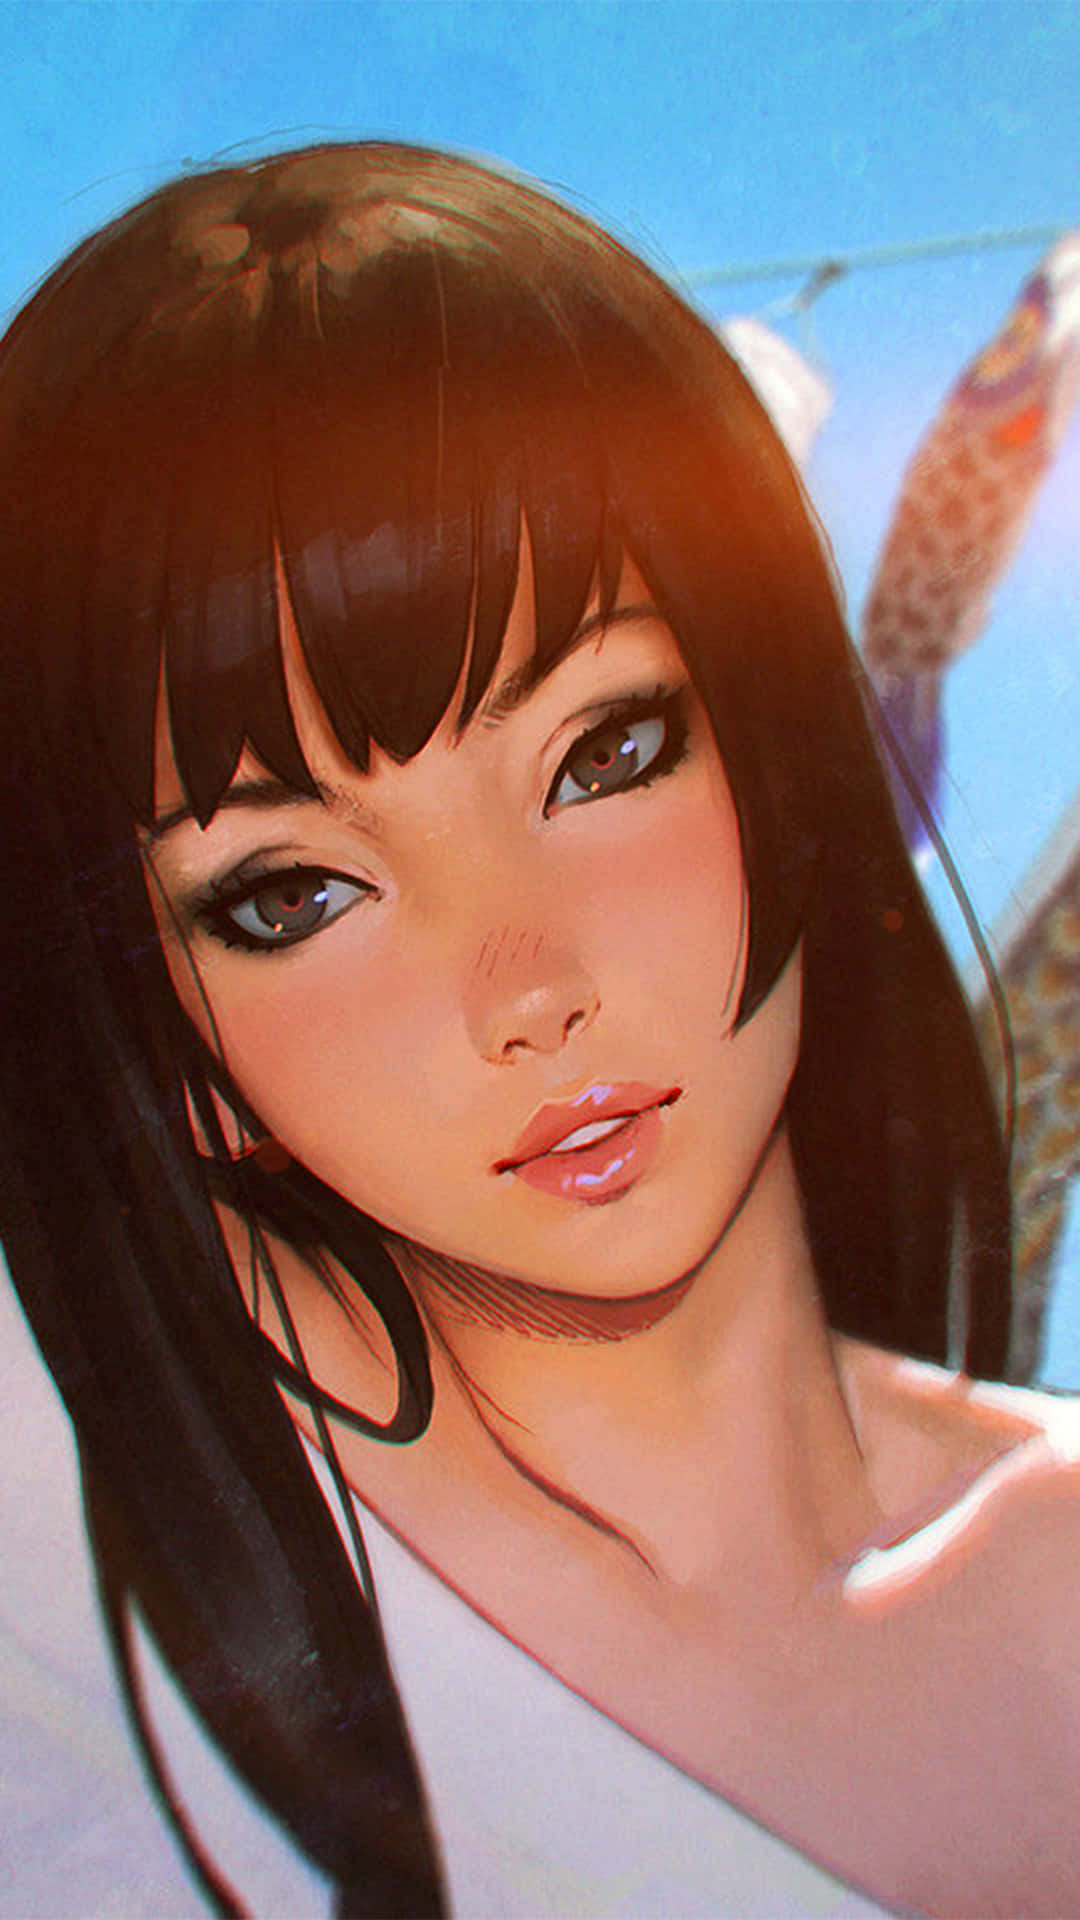 Stylish Anime Girl Portrait Background